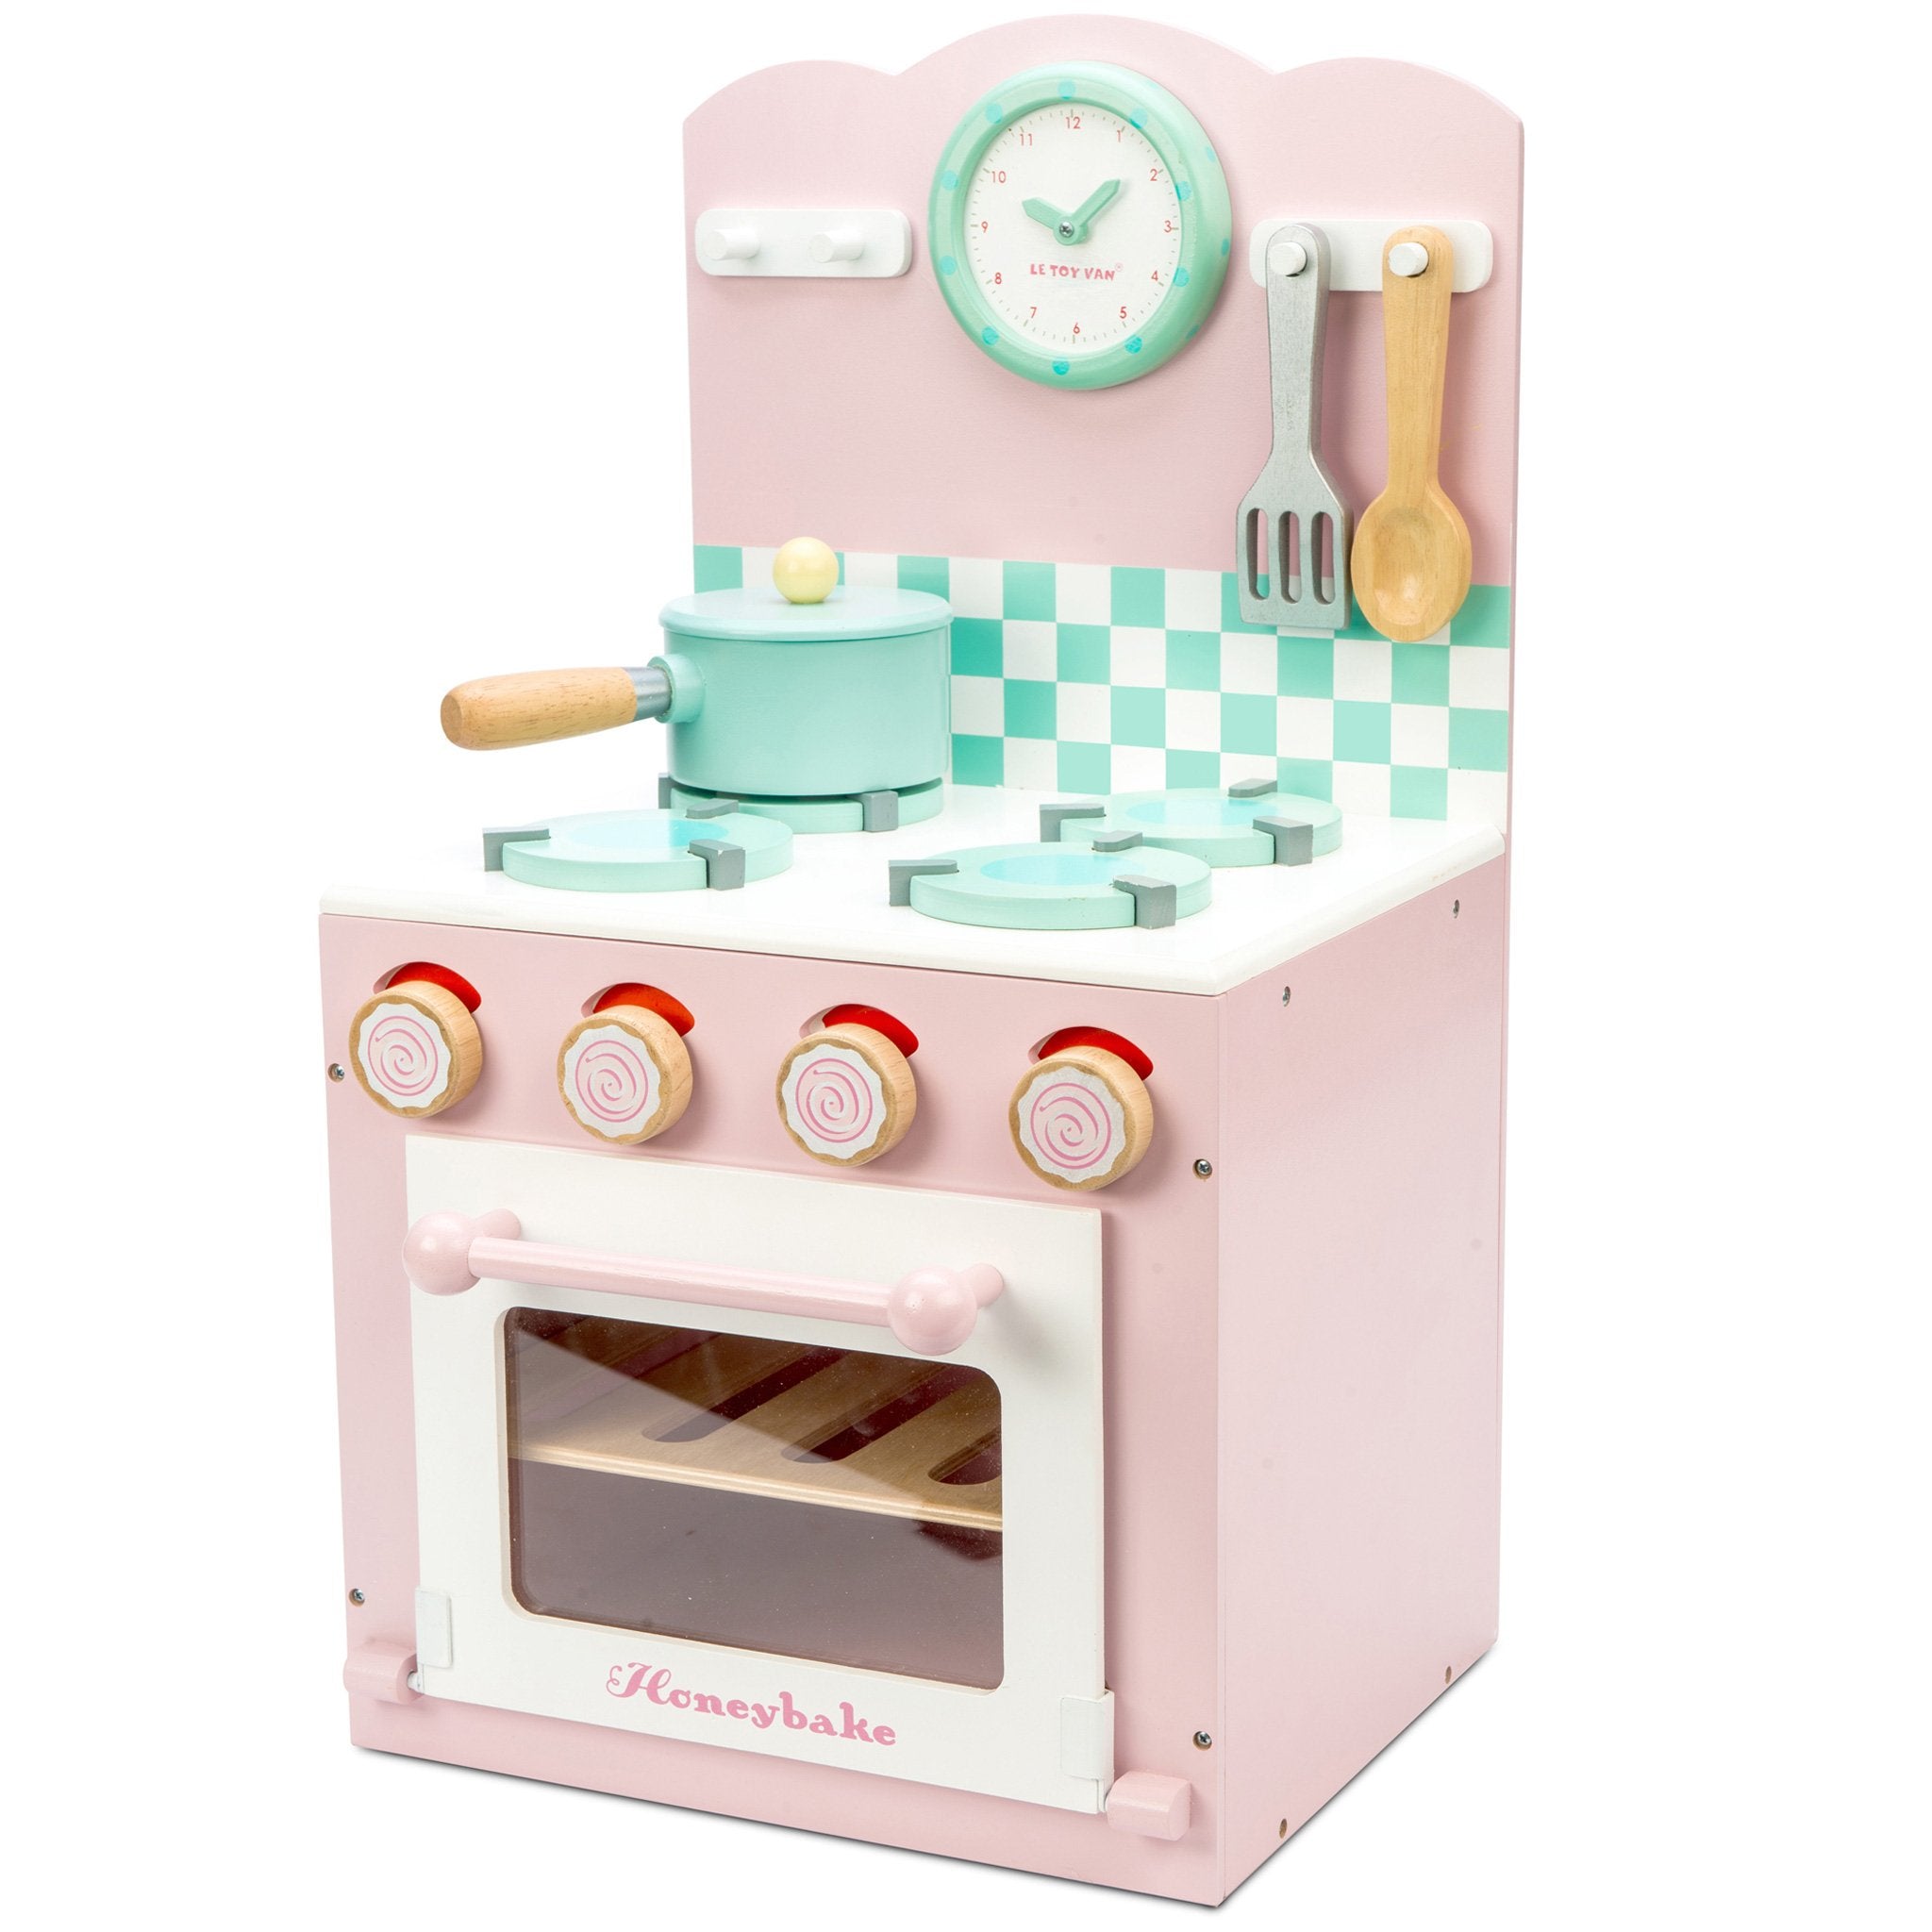 Oven \u0026 Hob Pink | Wooden Kitchens 